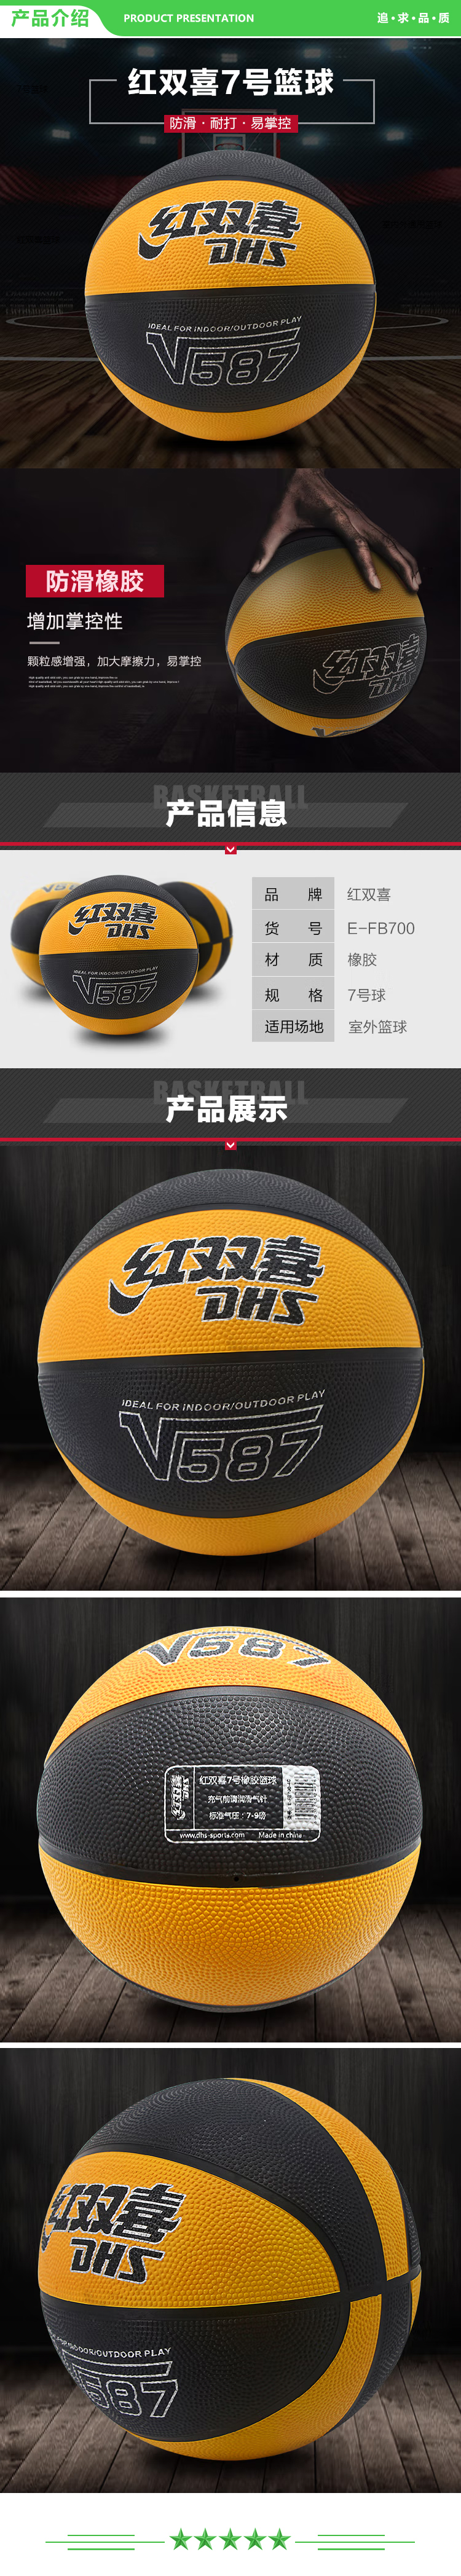 红双喜 DHS V587(E-FB700-4C) 7号篮球橡胶蓝球颗粒易抓握室外耐玩  (2).jpg